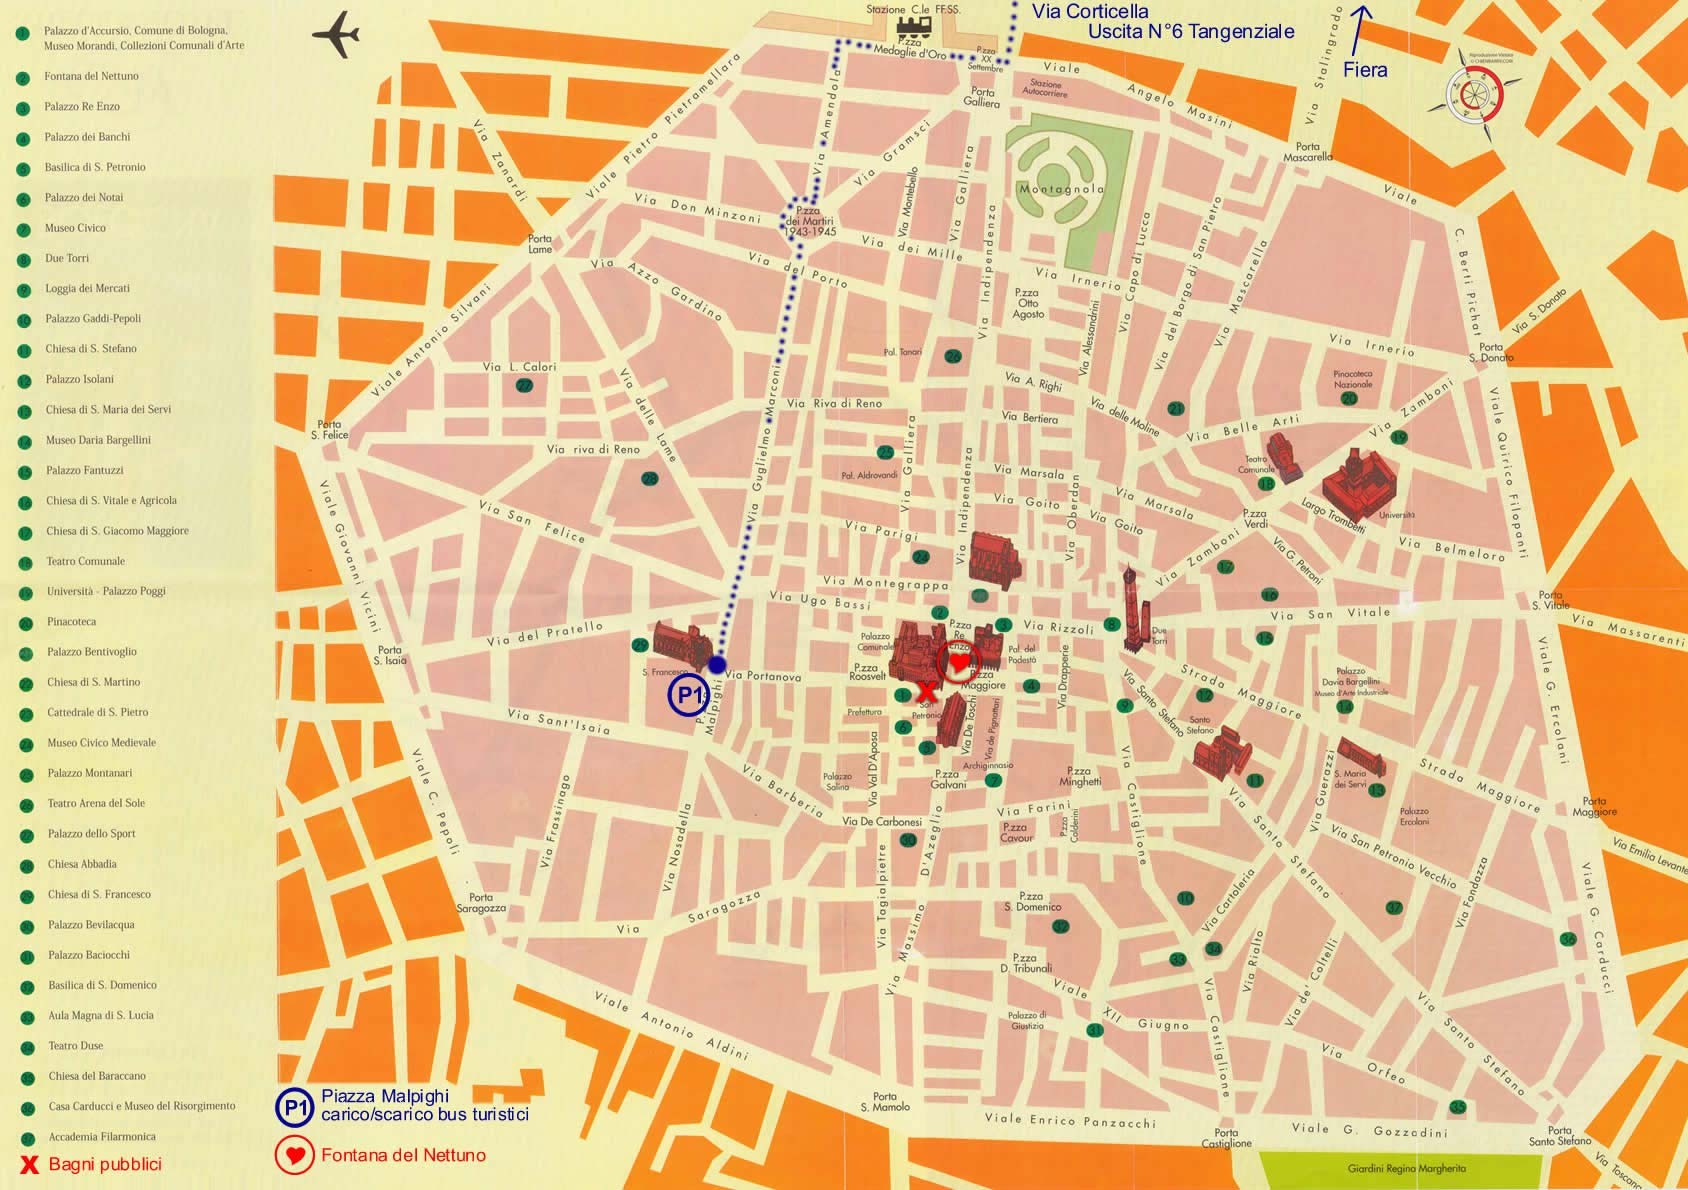 Tourism City Map Bologna Mapsof Net